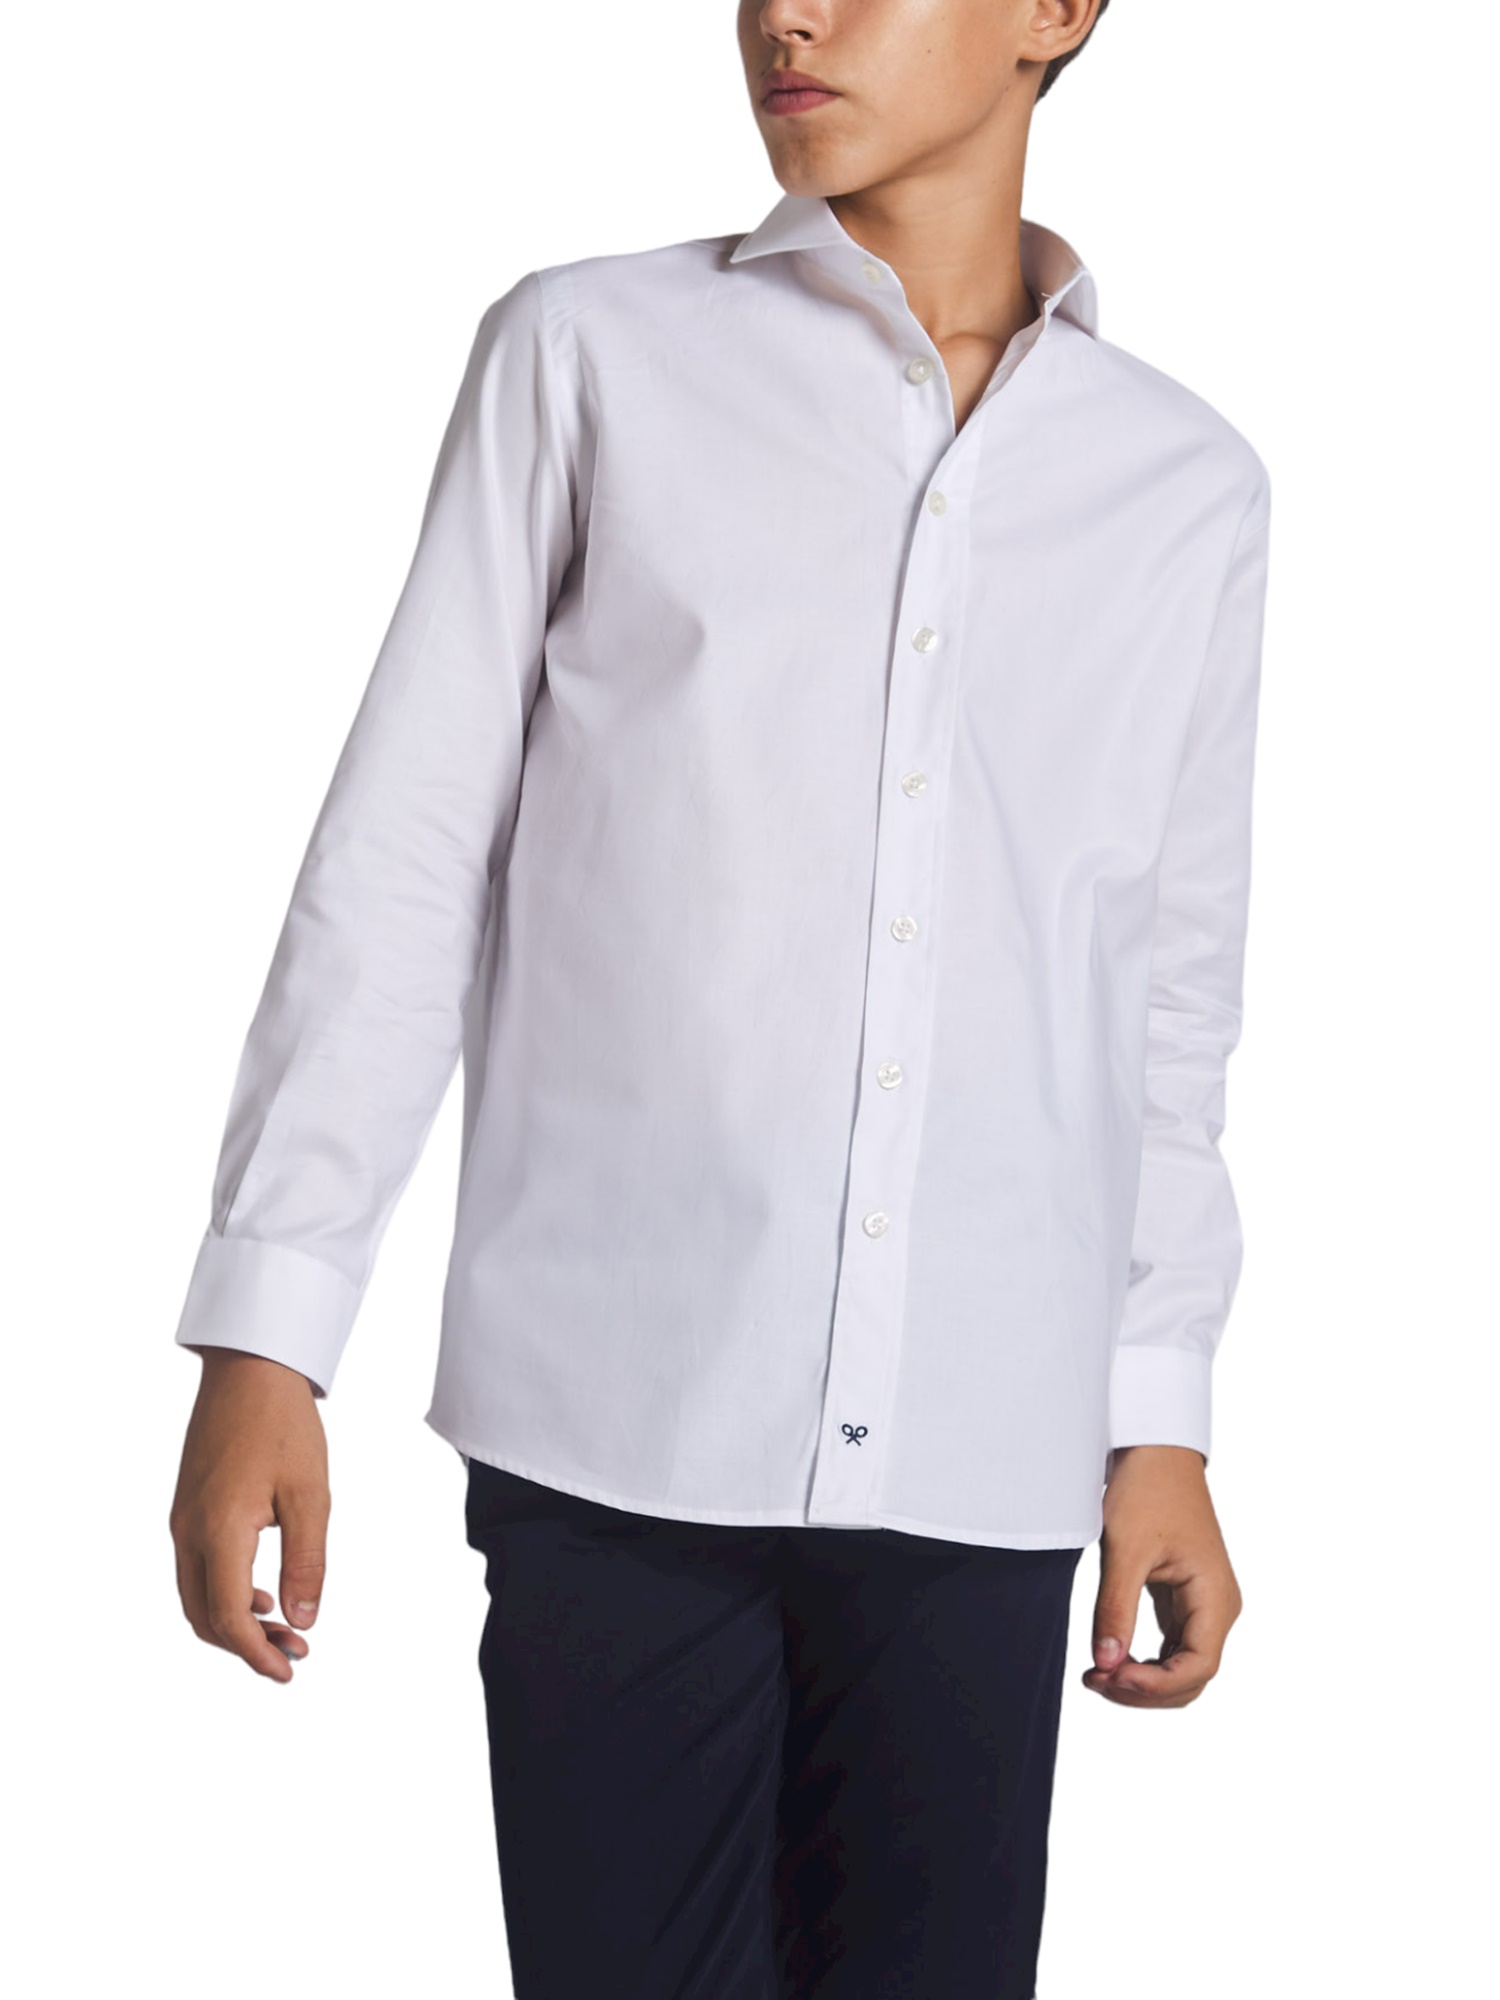 Silbon - Silbon - Camisa vestir kids puño simple blanca para Niño